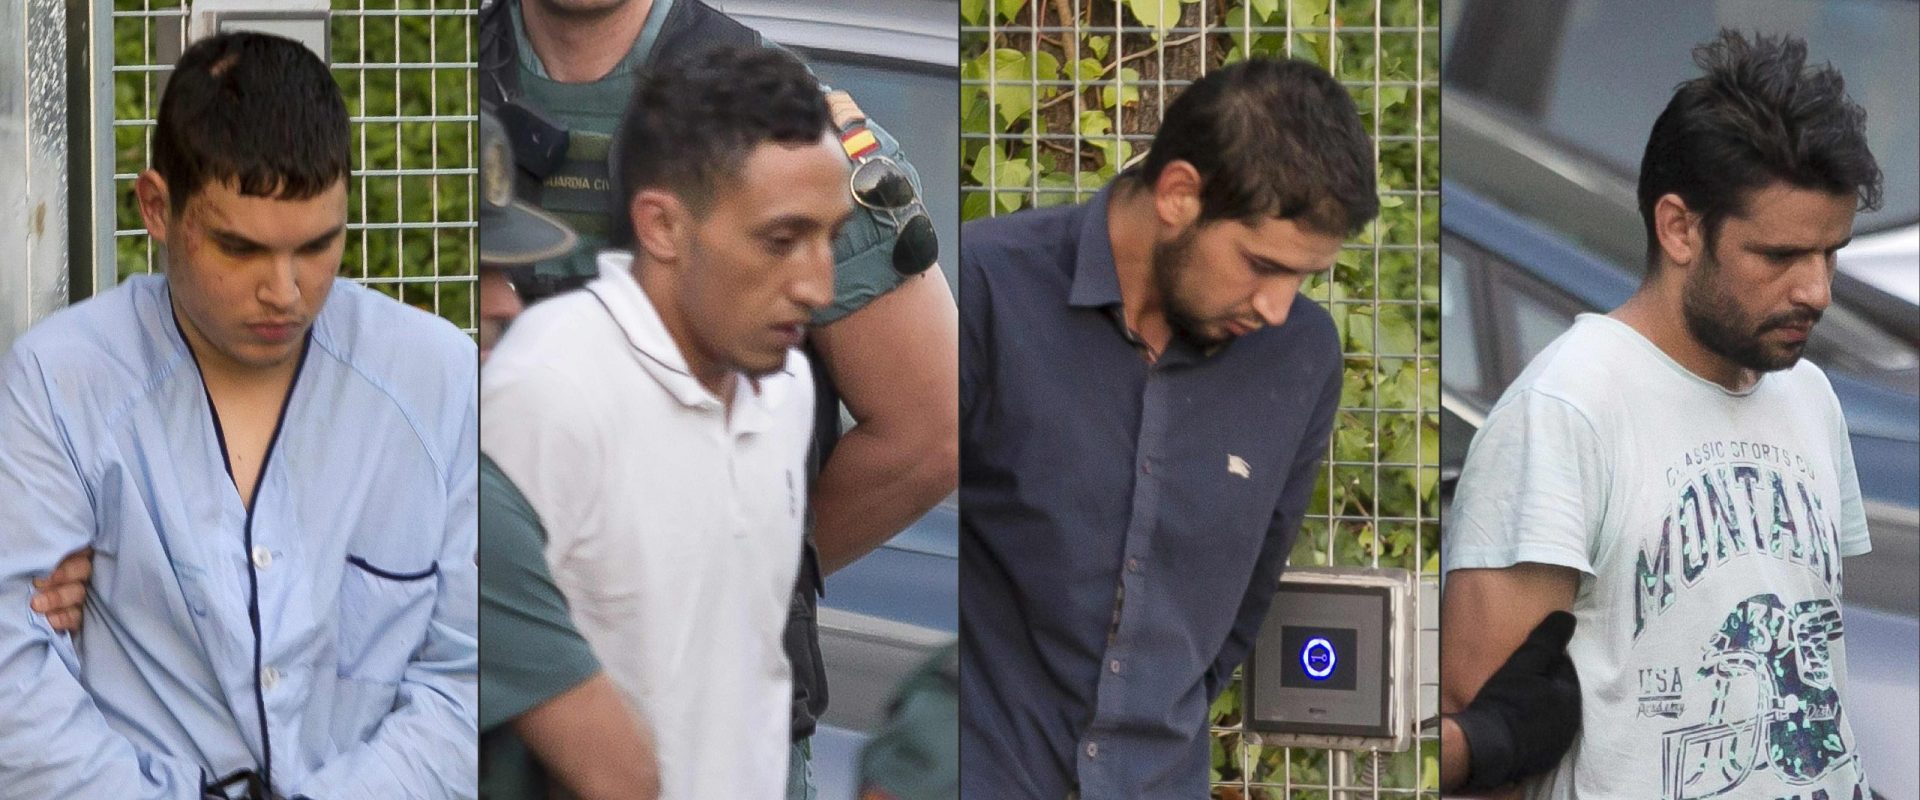 Detidos em Barcelona acusados formalmente de terrorismo